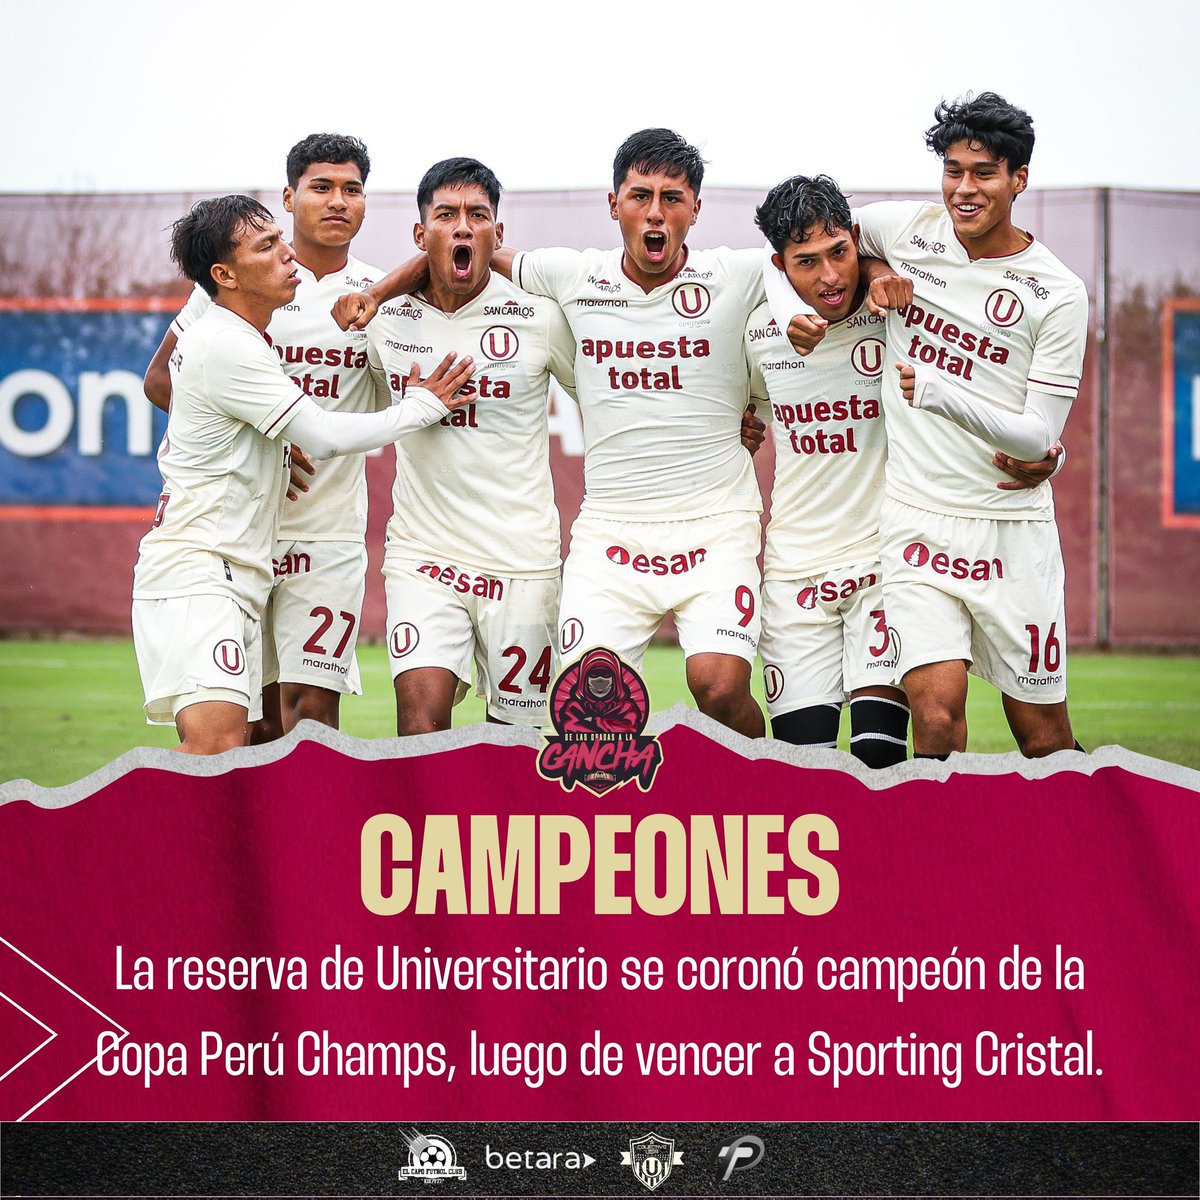 LA GLORIA ES CREMA 🗣️

@MenoresU venció a Sporting Cristal en la final de la Copa Perú Champs, y se coronaron campeones 💛❤️

#delasgradasalacancha #ydaleu #universitario #Liga1 #ydaleucampeon #Los100DelÚnicoGrande